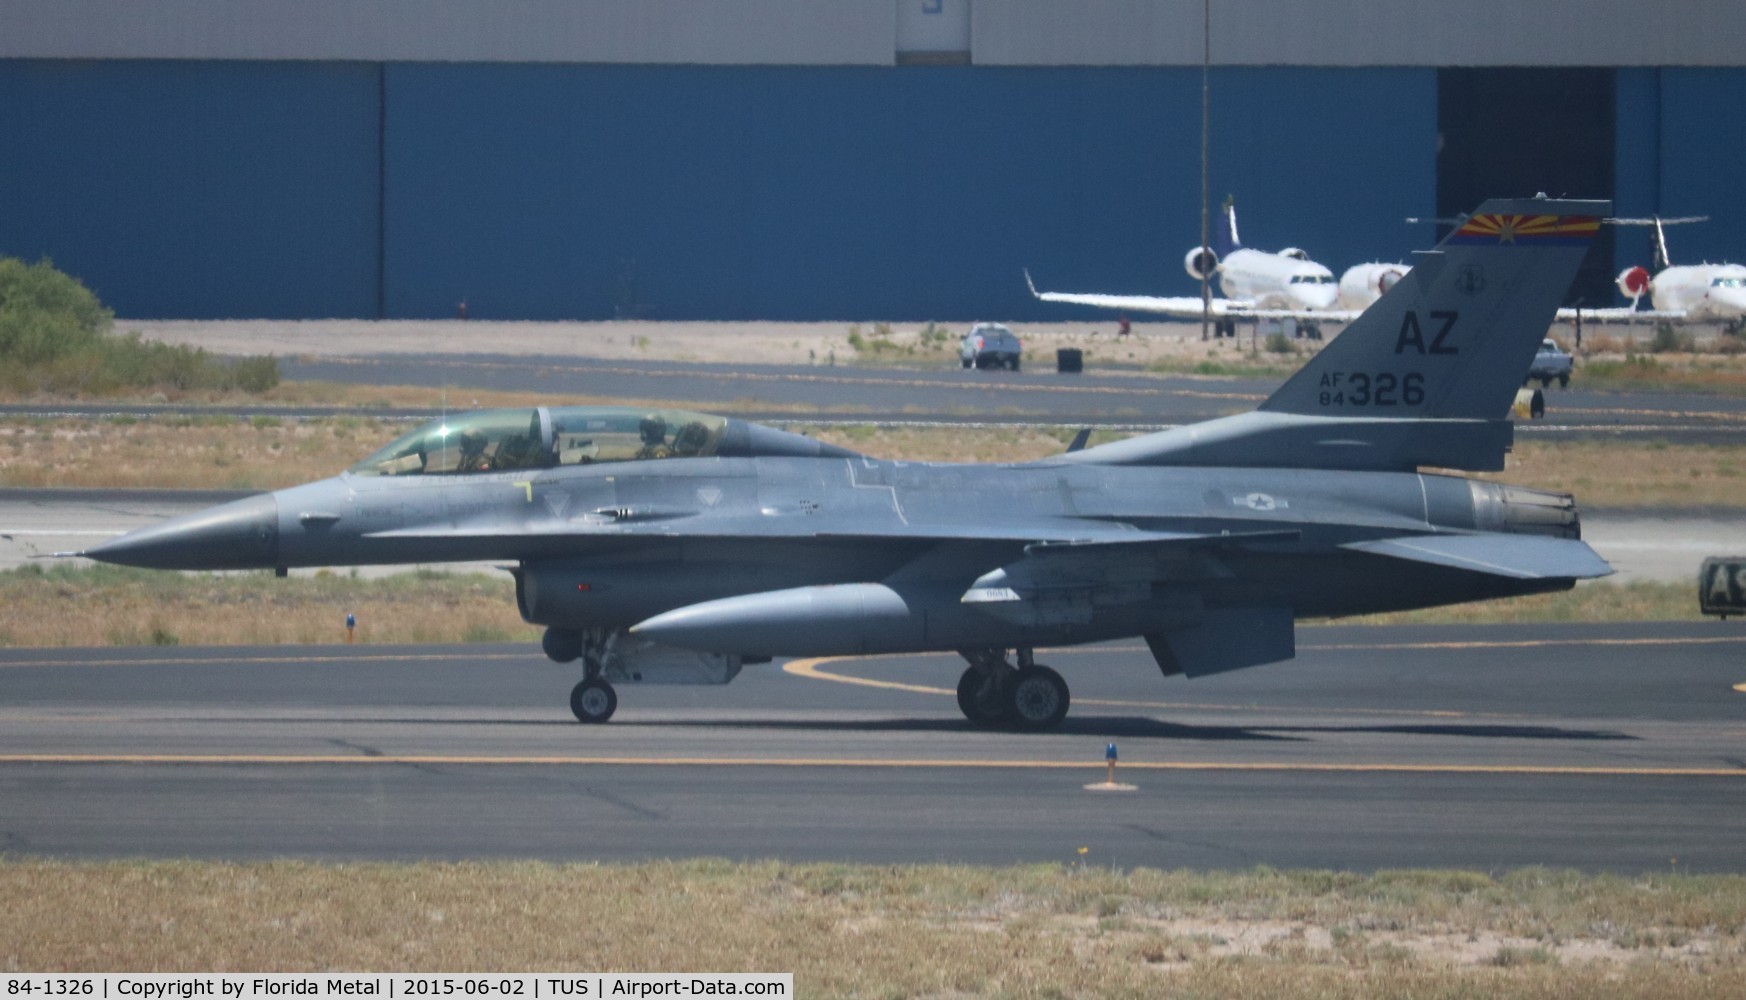 84-1326, 1984 General Dynamics F-16D Fighting Falcon C/N 5D-20, F-16D